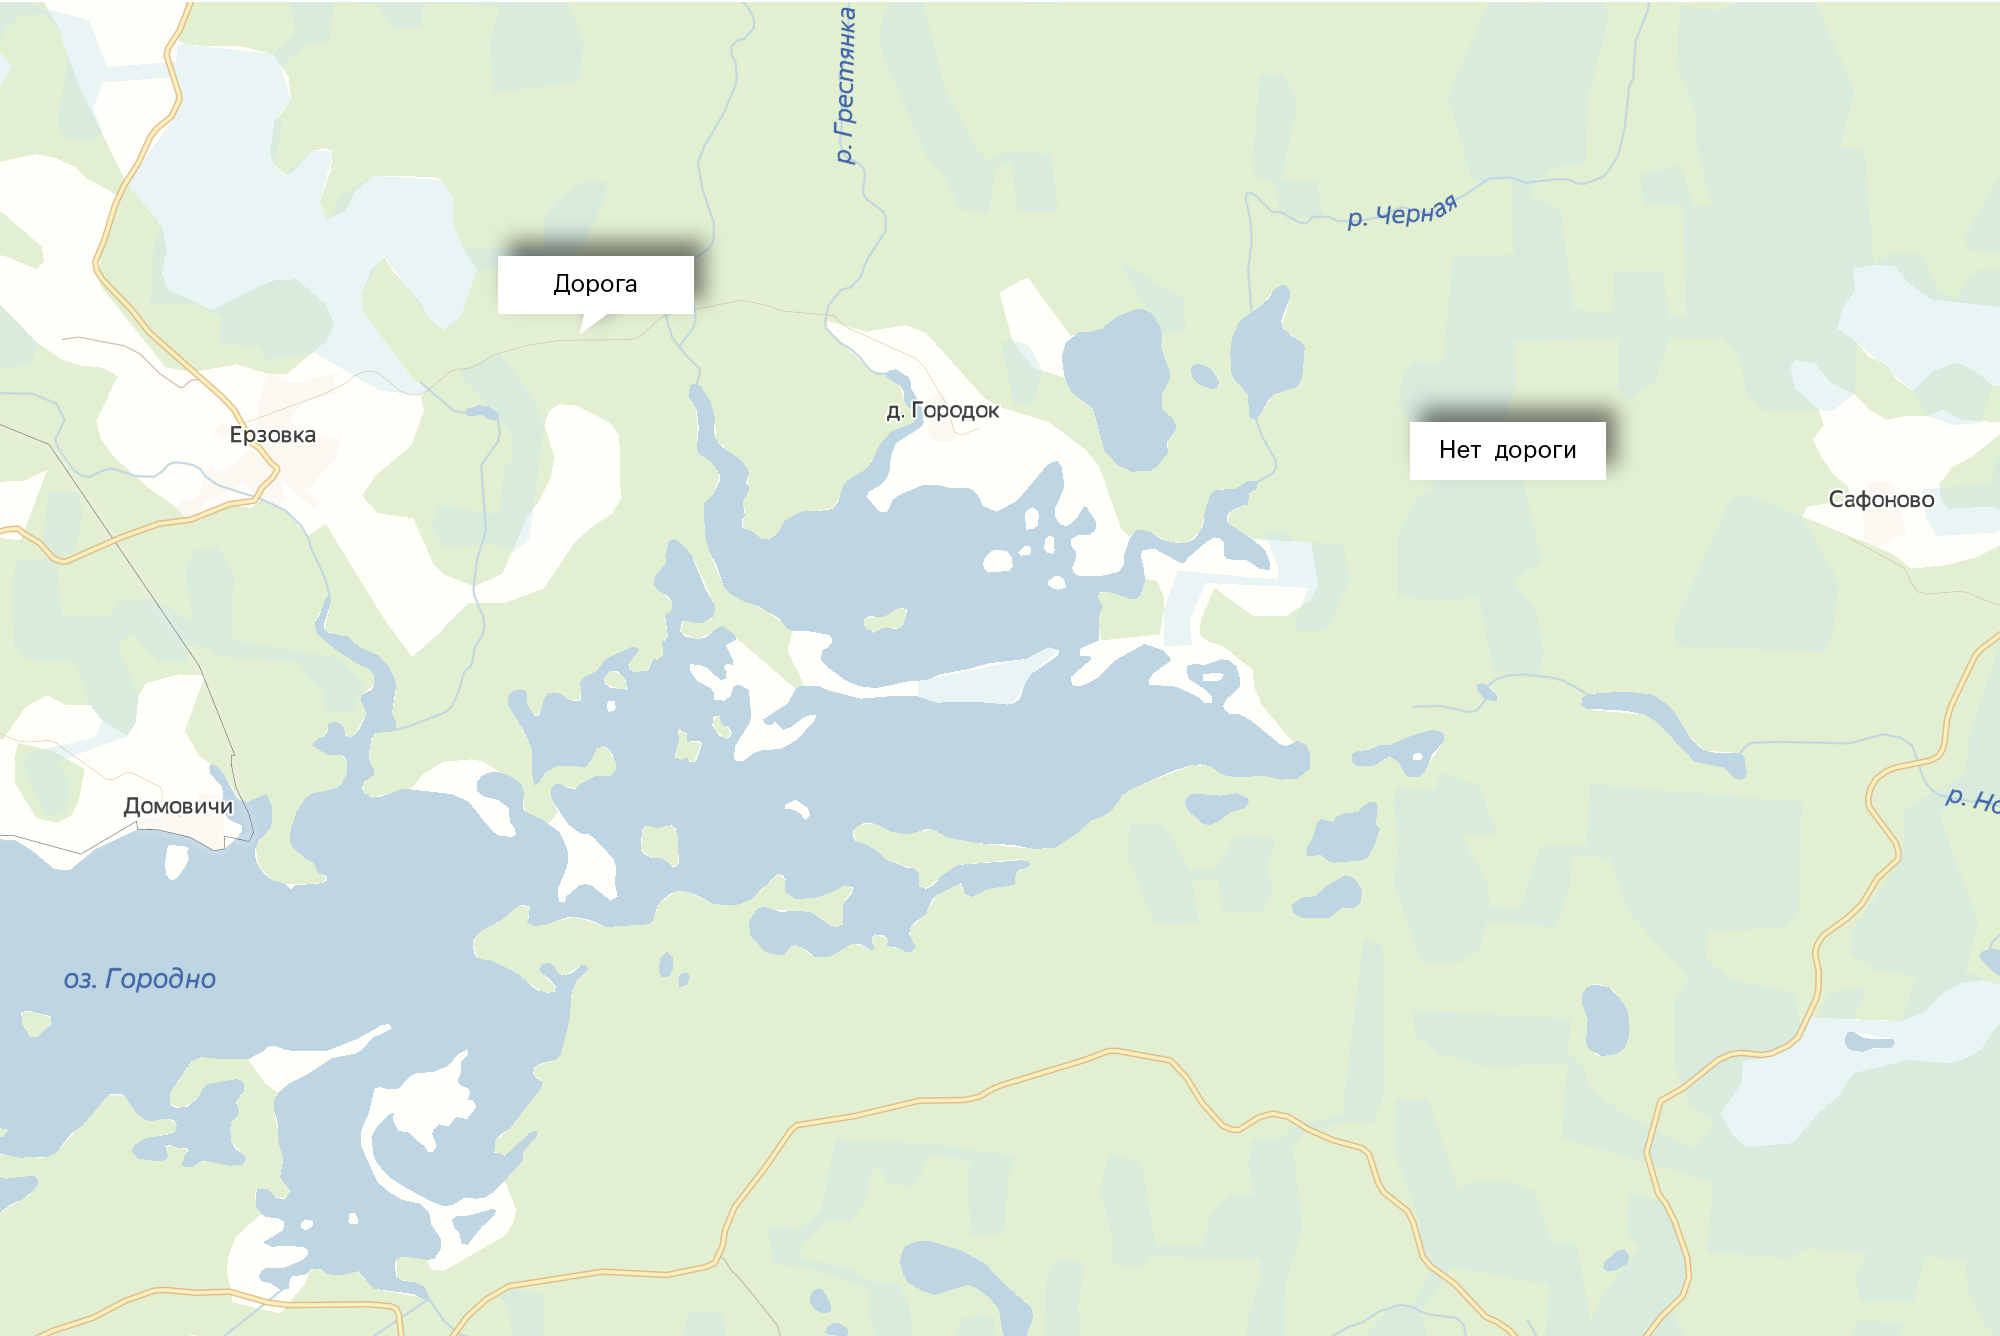 В режиме просмотра «Схема» в «Яндекс-картах» дорога прослеживается от Ерзовки до Городка. От Городка до деревни Сафоново ее нет